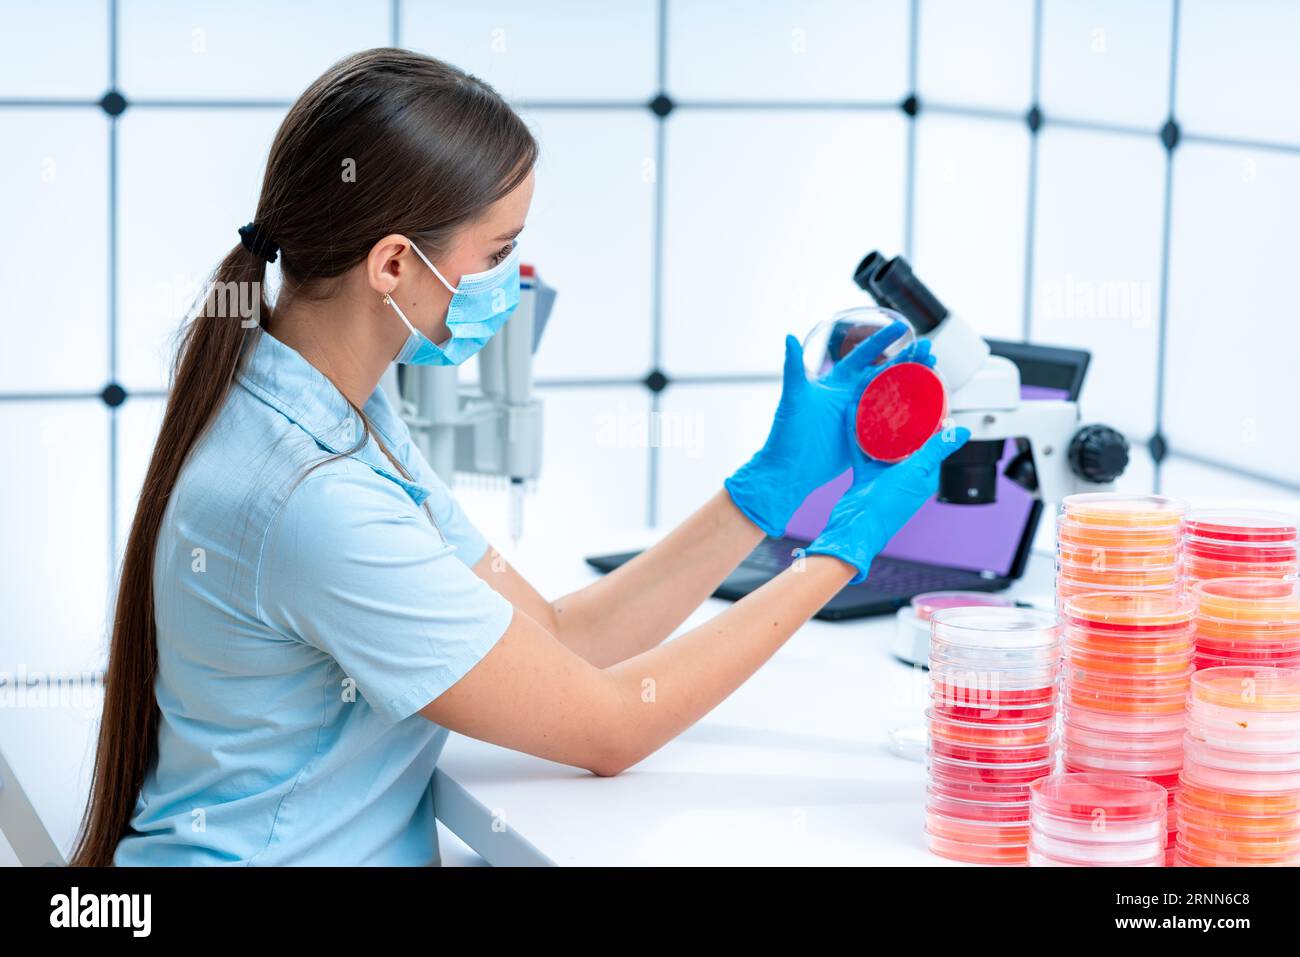 Gentechnische Experimente: Petrischalen werden in gentechnischen Experimenten für das Wachstum und die Auswahl genetisch veränderter Organis verwendet Stockfoto